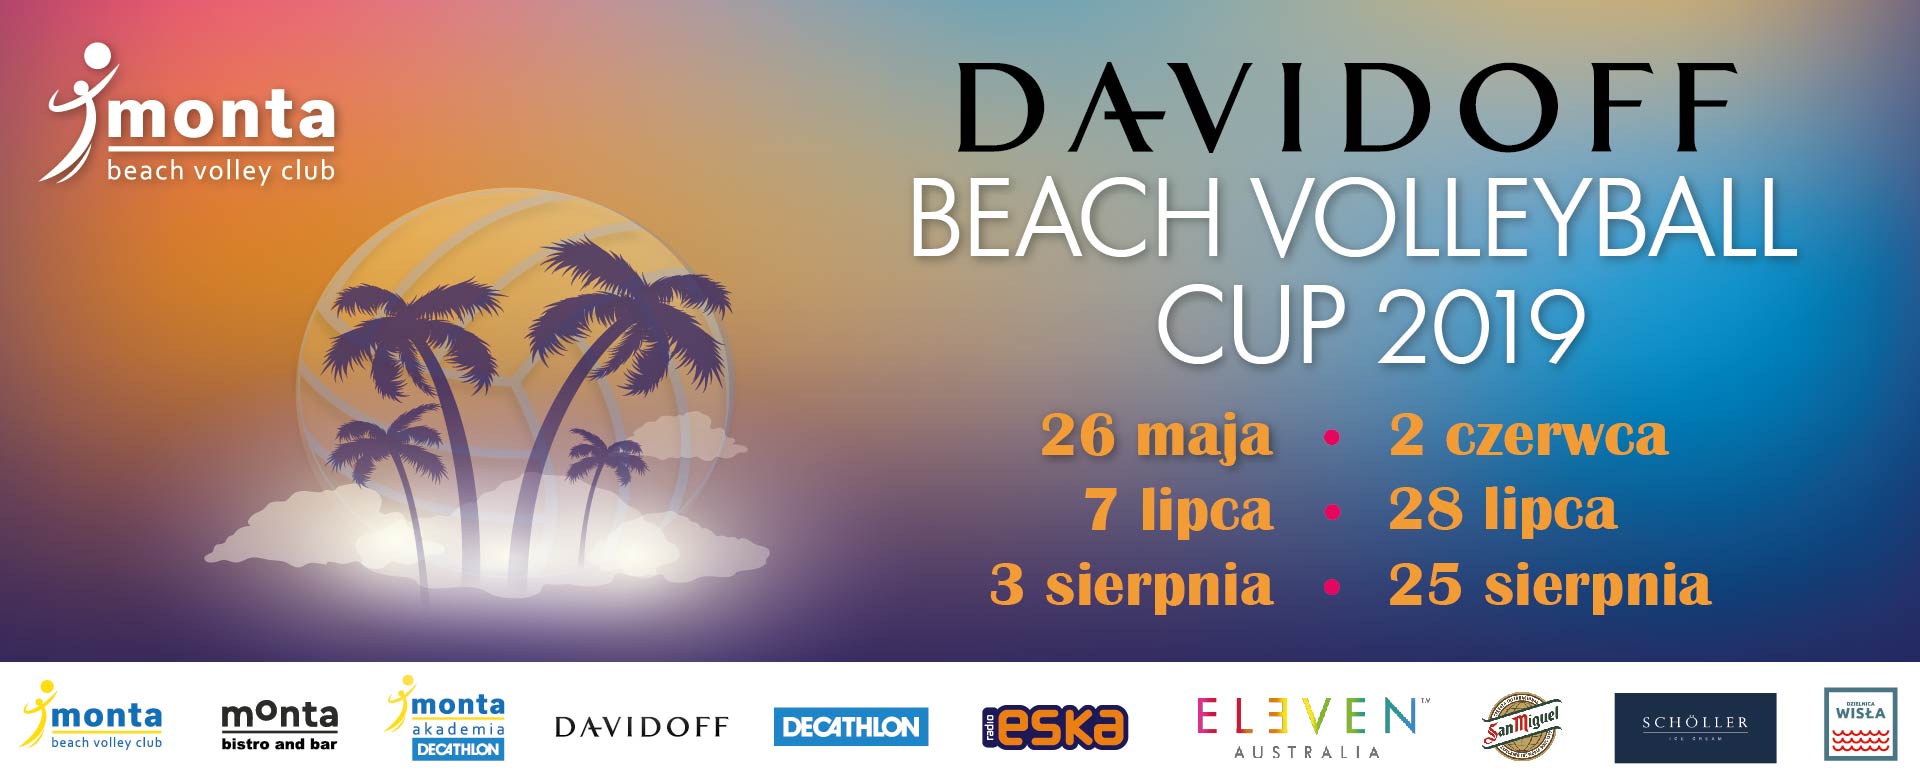 Davidoff Beach Volleyball Cup 2019